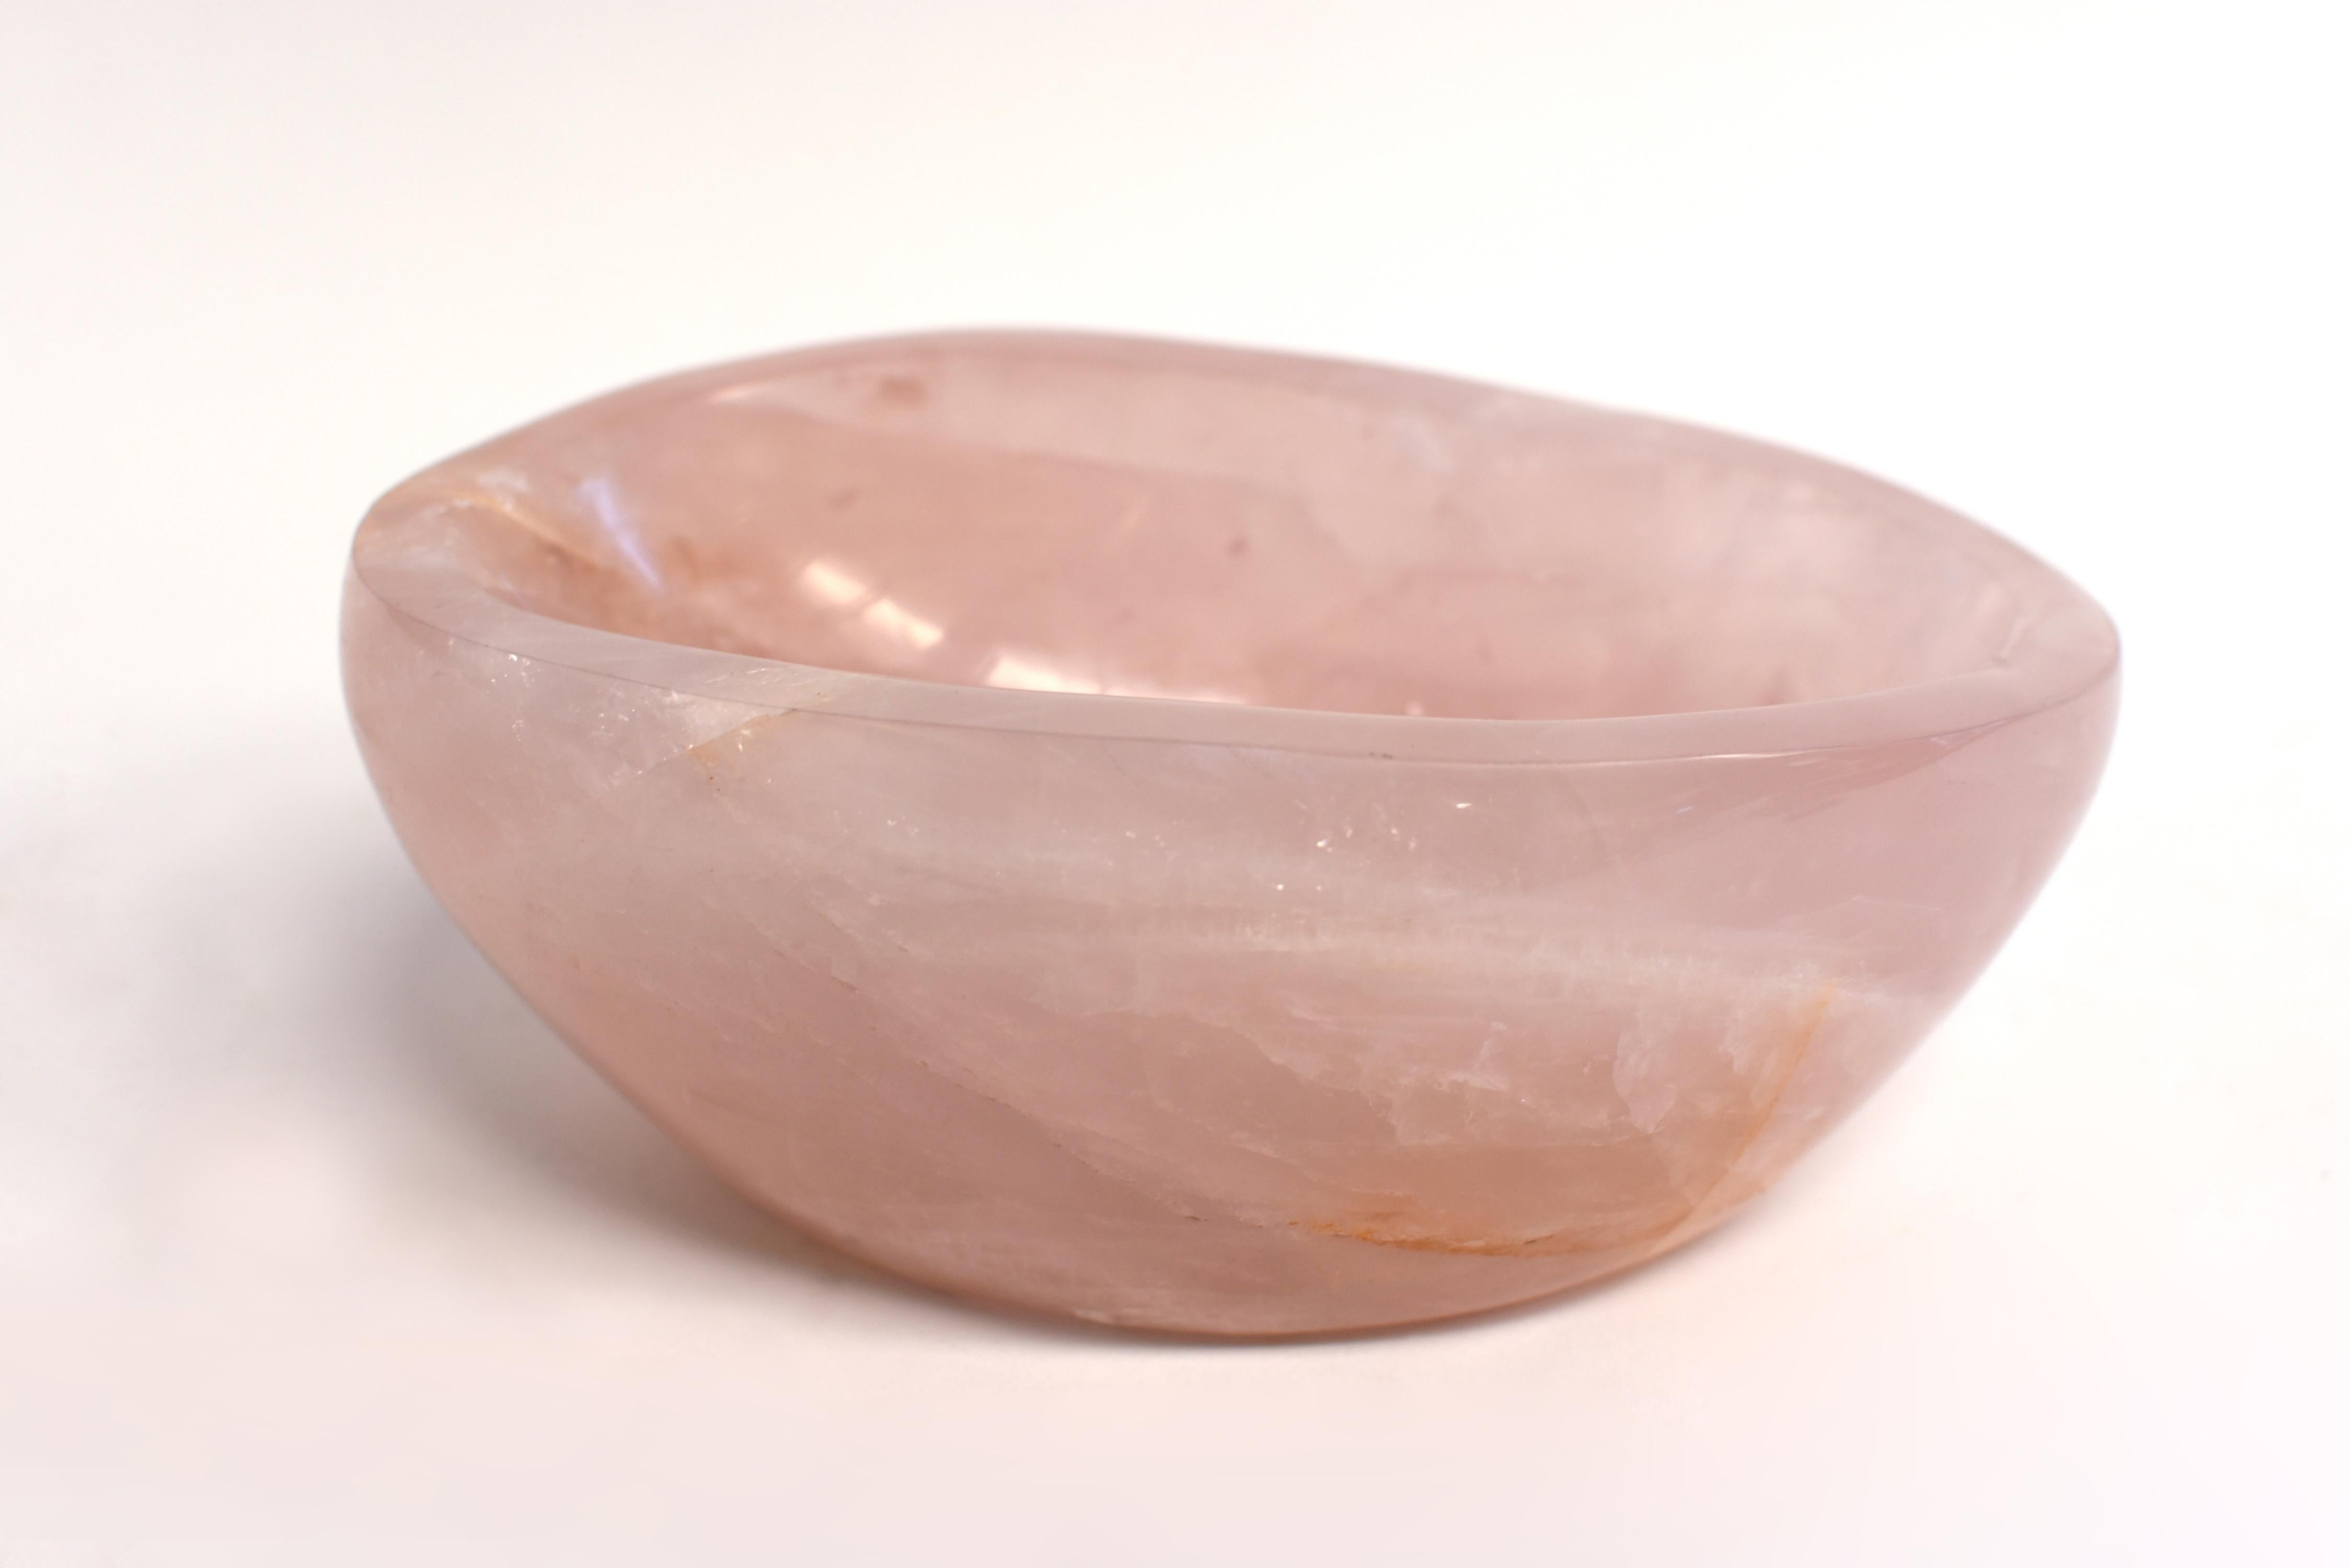 rose quartz sink bowl